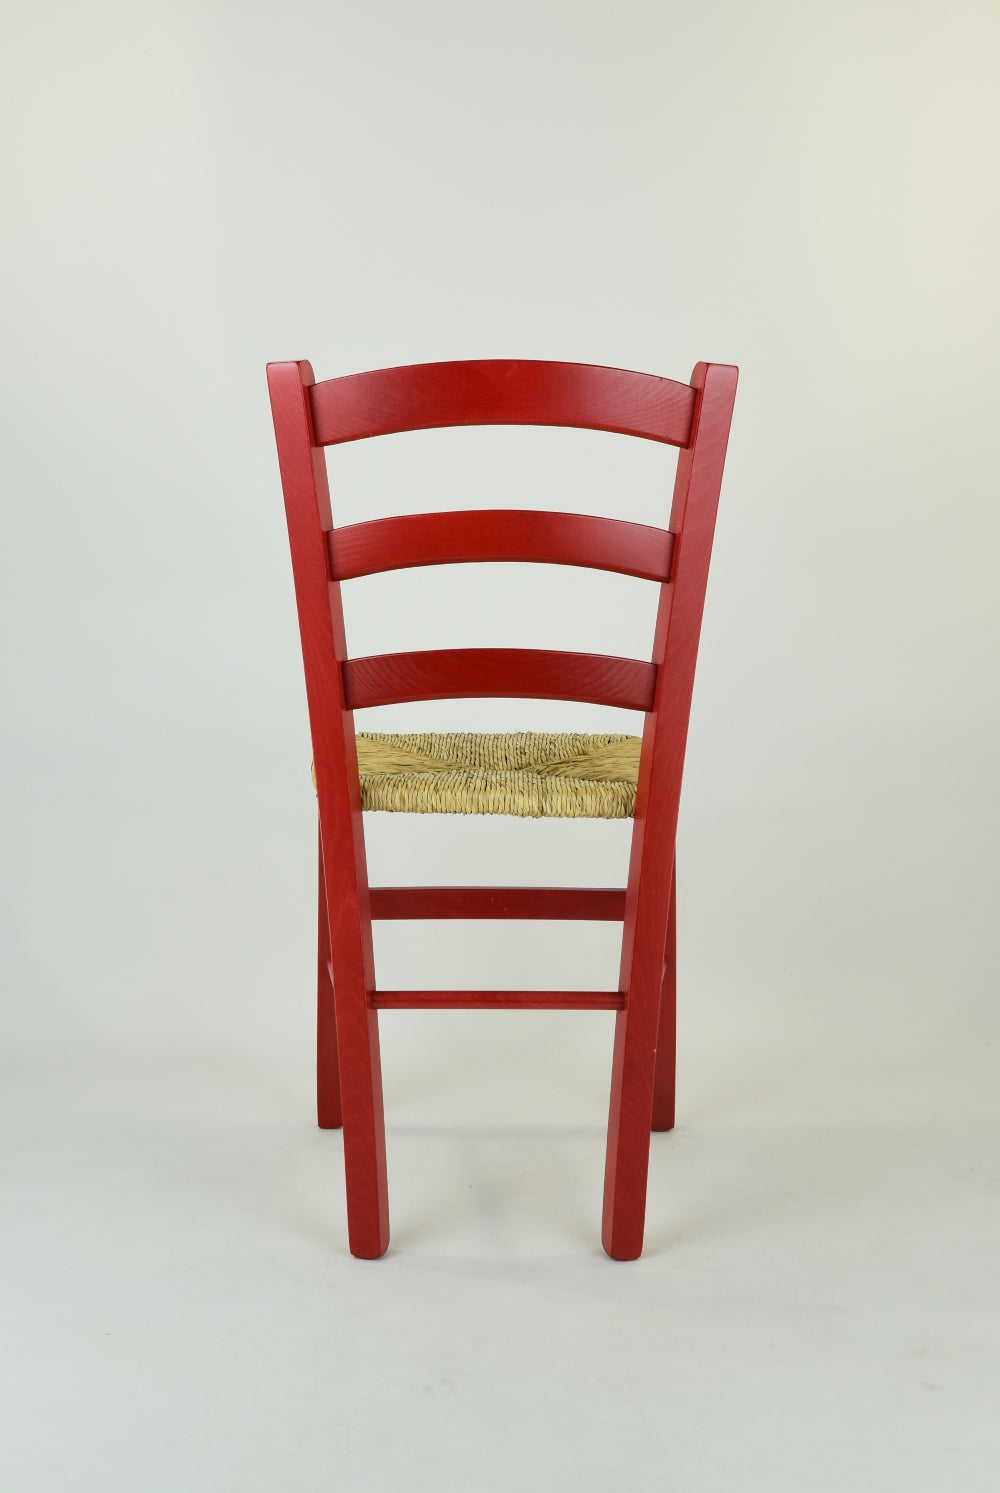 Tommychairs - Set 4 sillas Venezia para Cocina y Comedor, Estructura en Madera de Haya Color anilina roja y Asiento en Paja